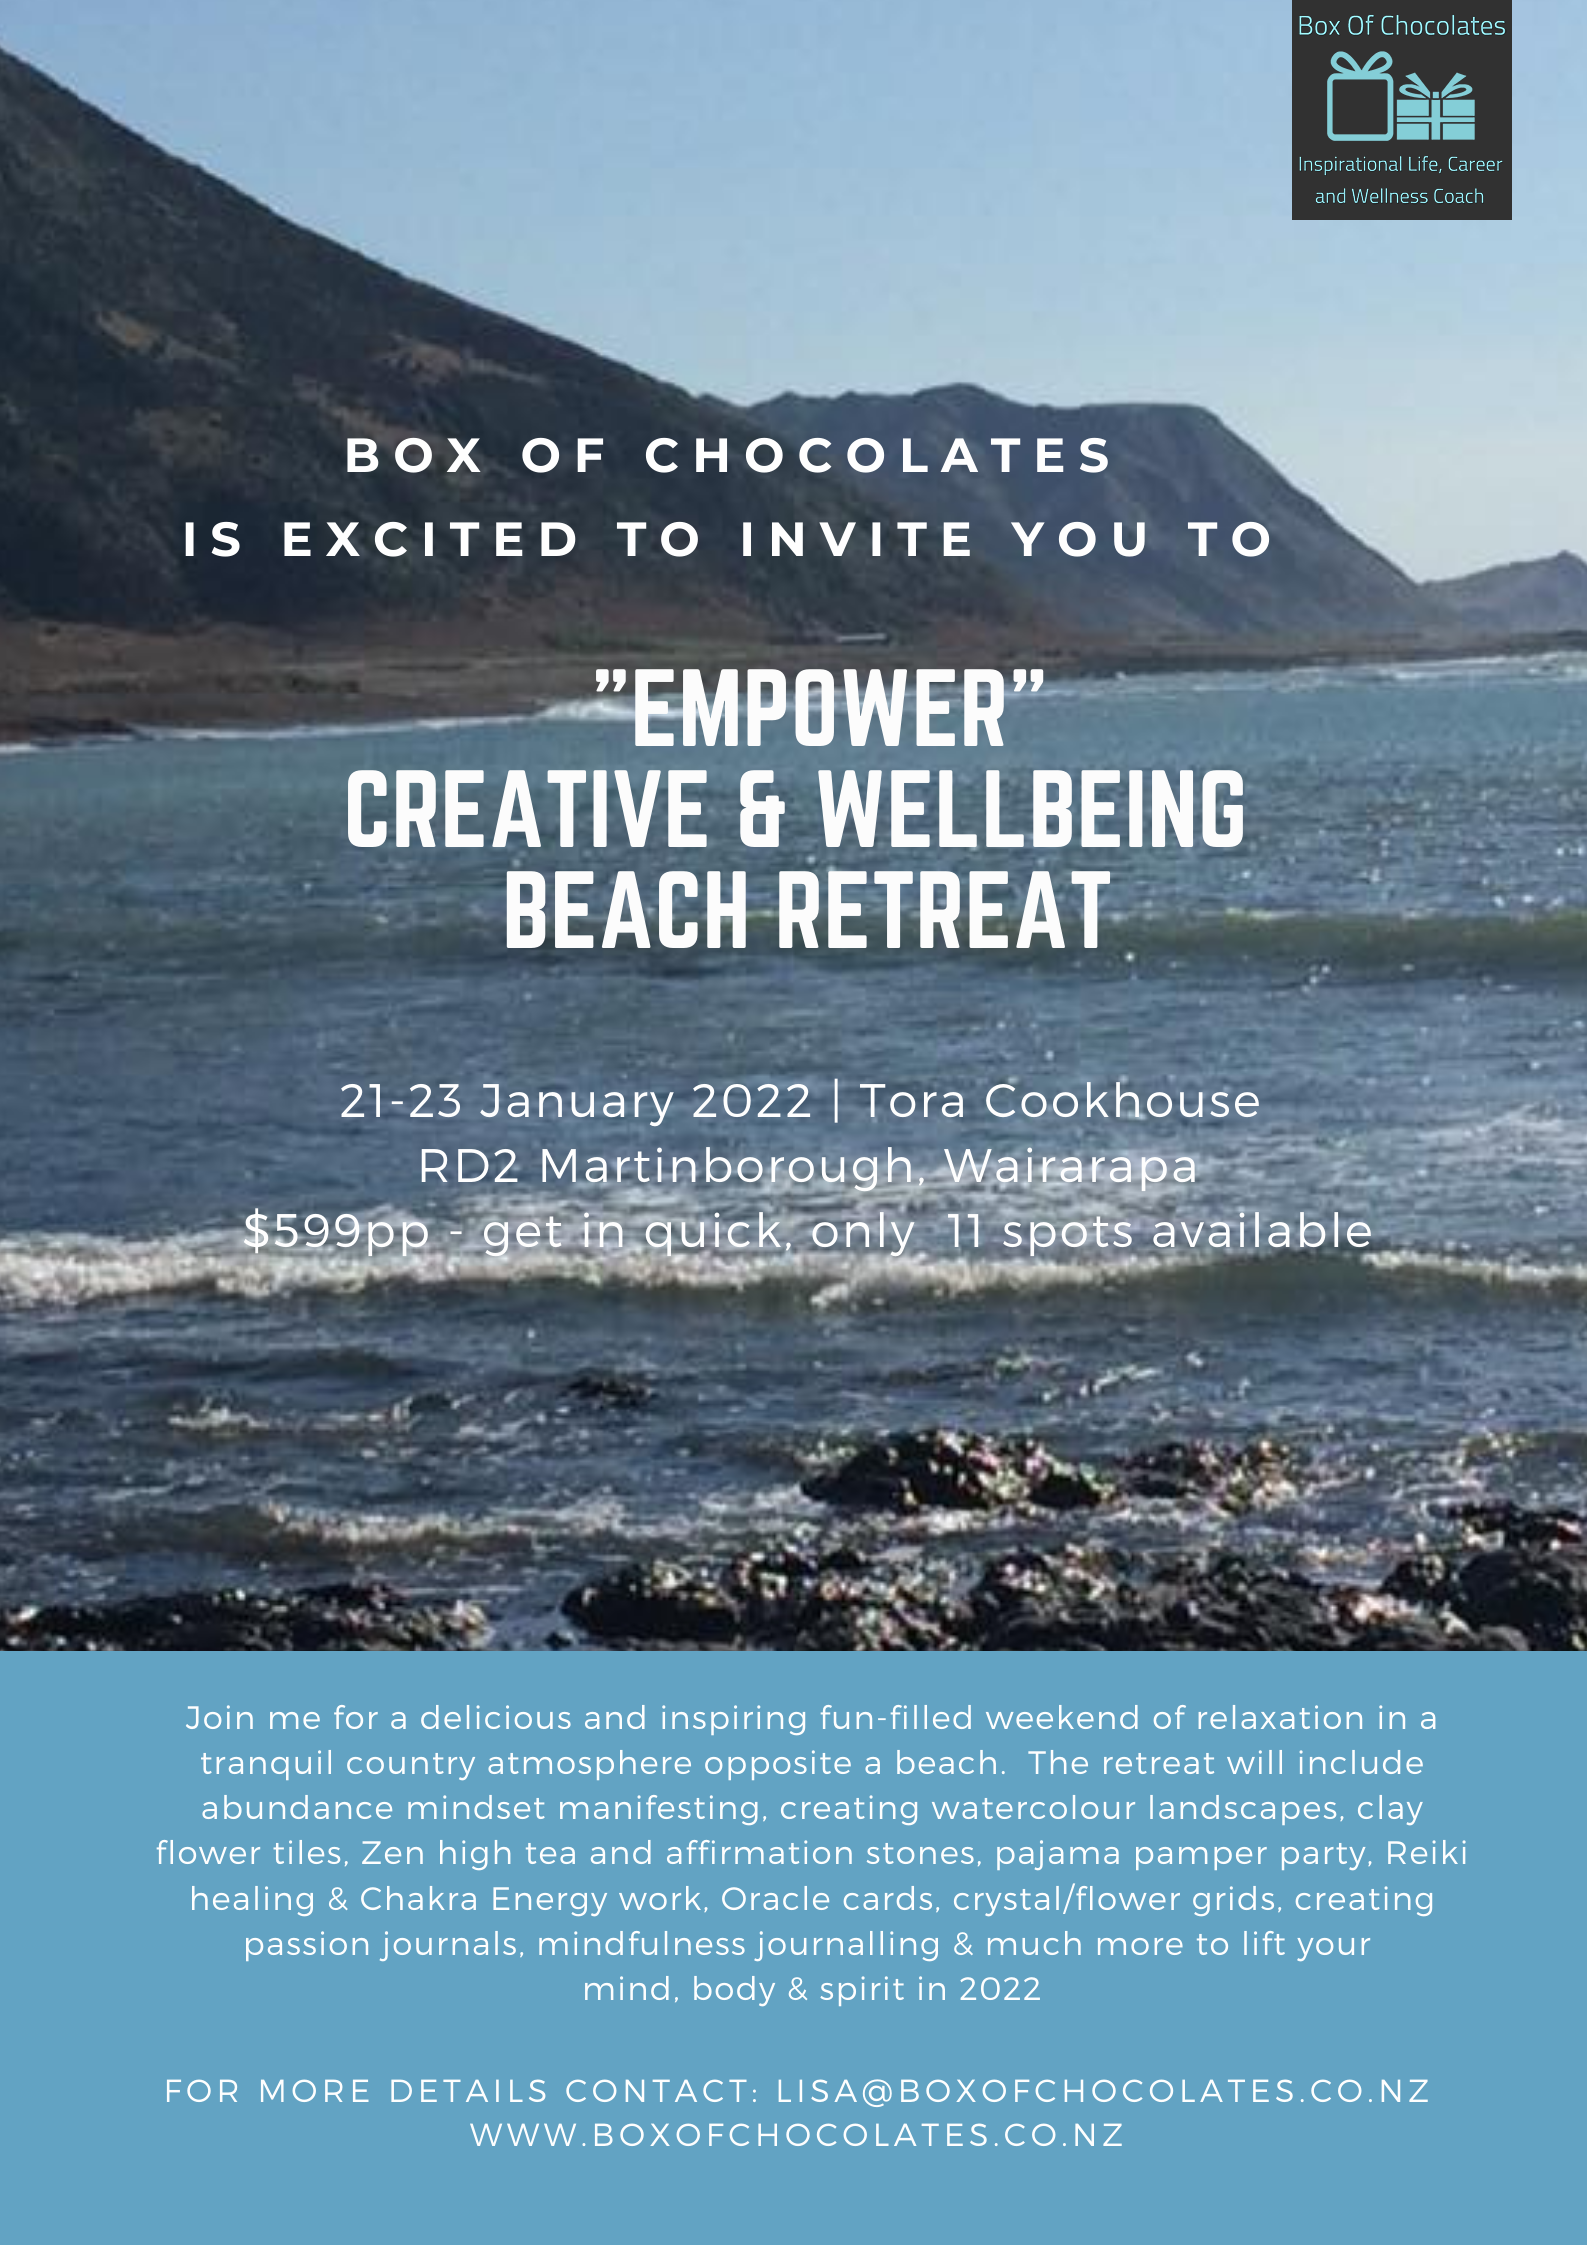 EMPOWER - Creative & Wellbeing Beach Retreat